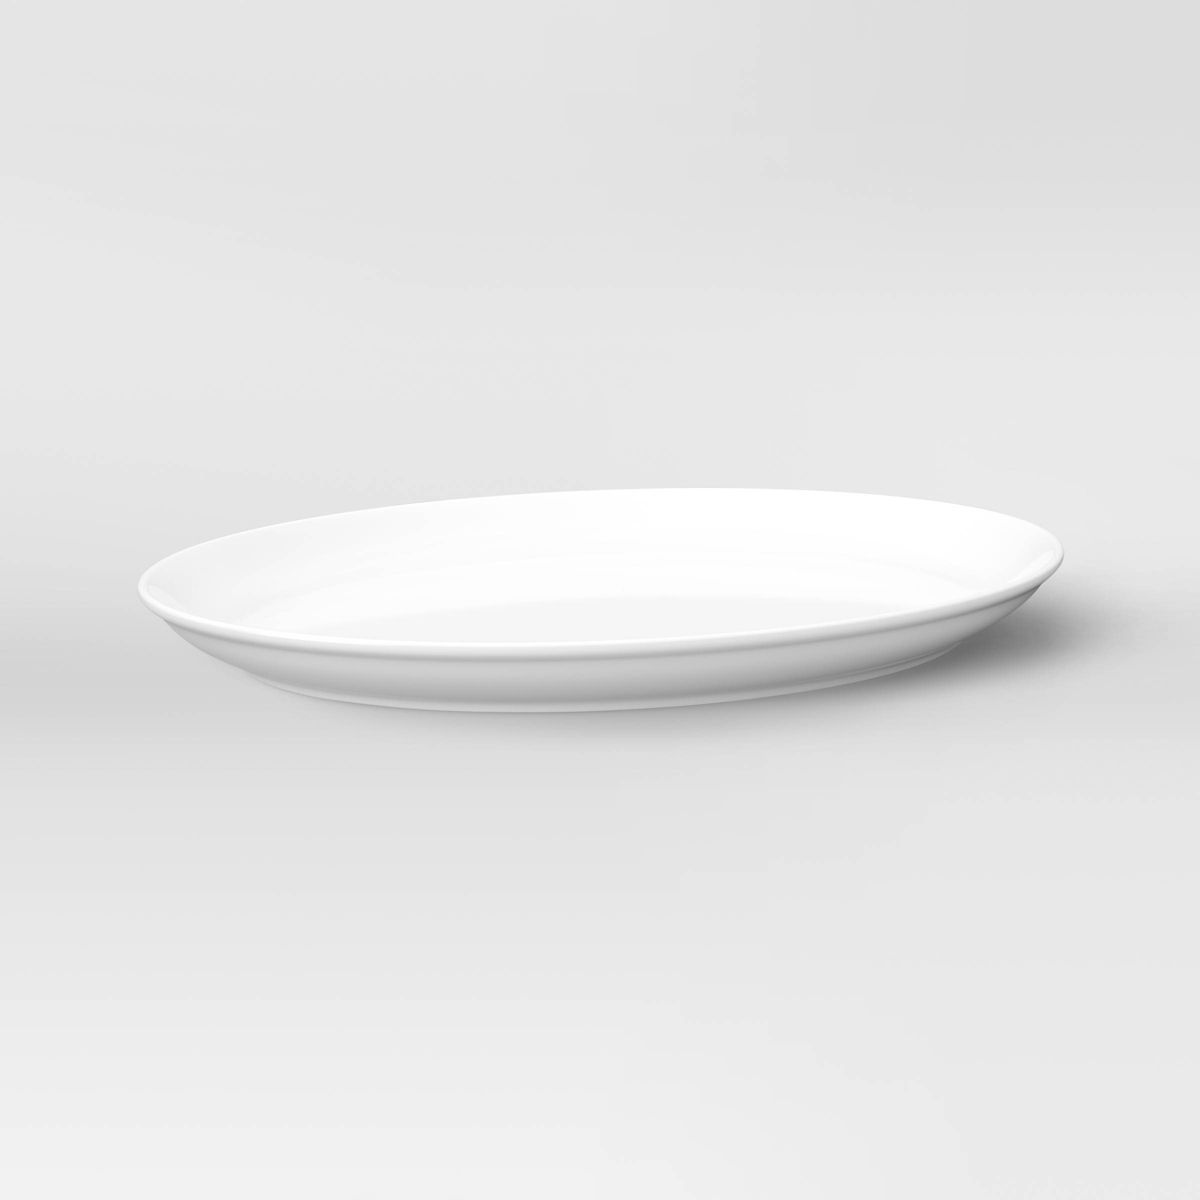 18" x 14" Porcelain Oval Serving Platter White - Threshold™ | Target